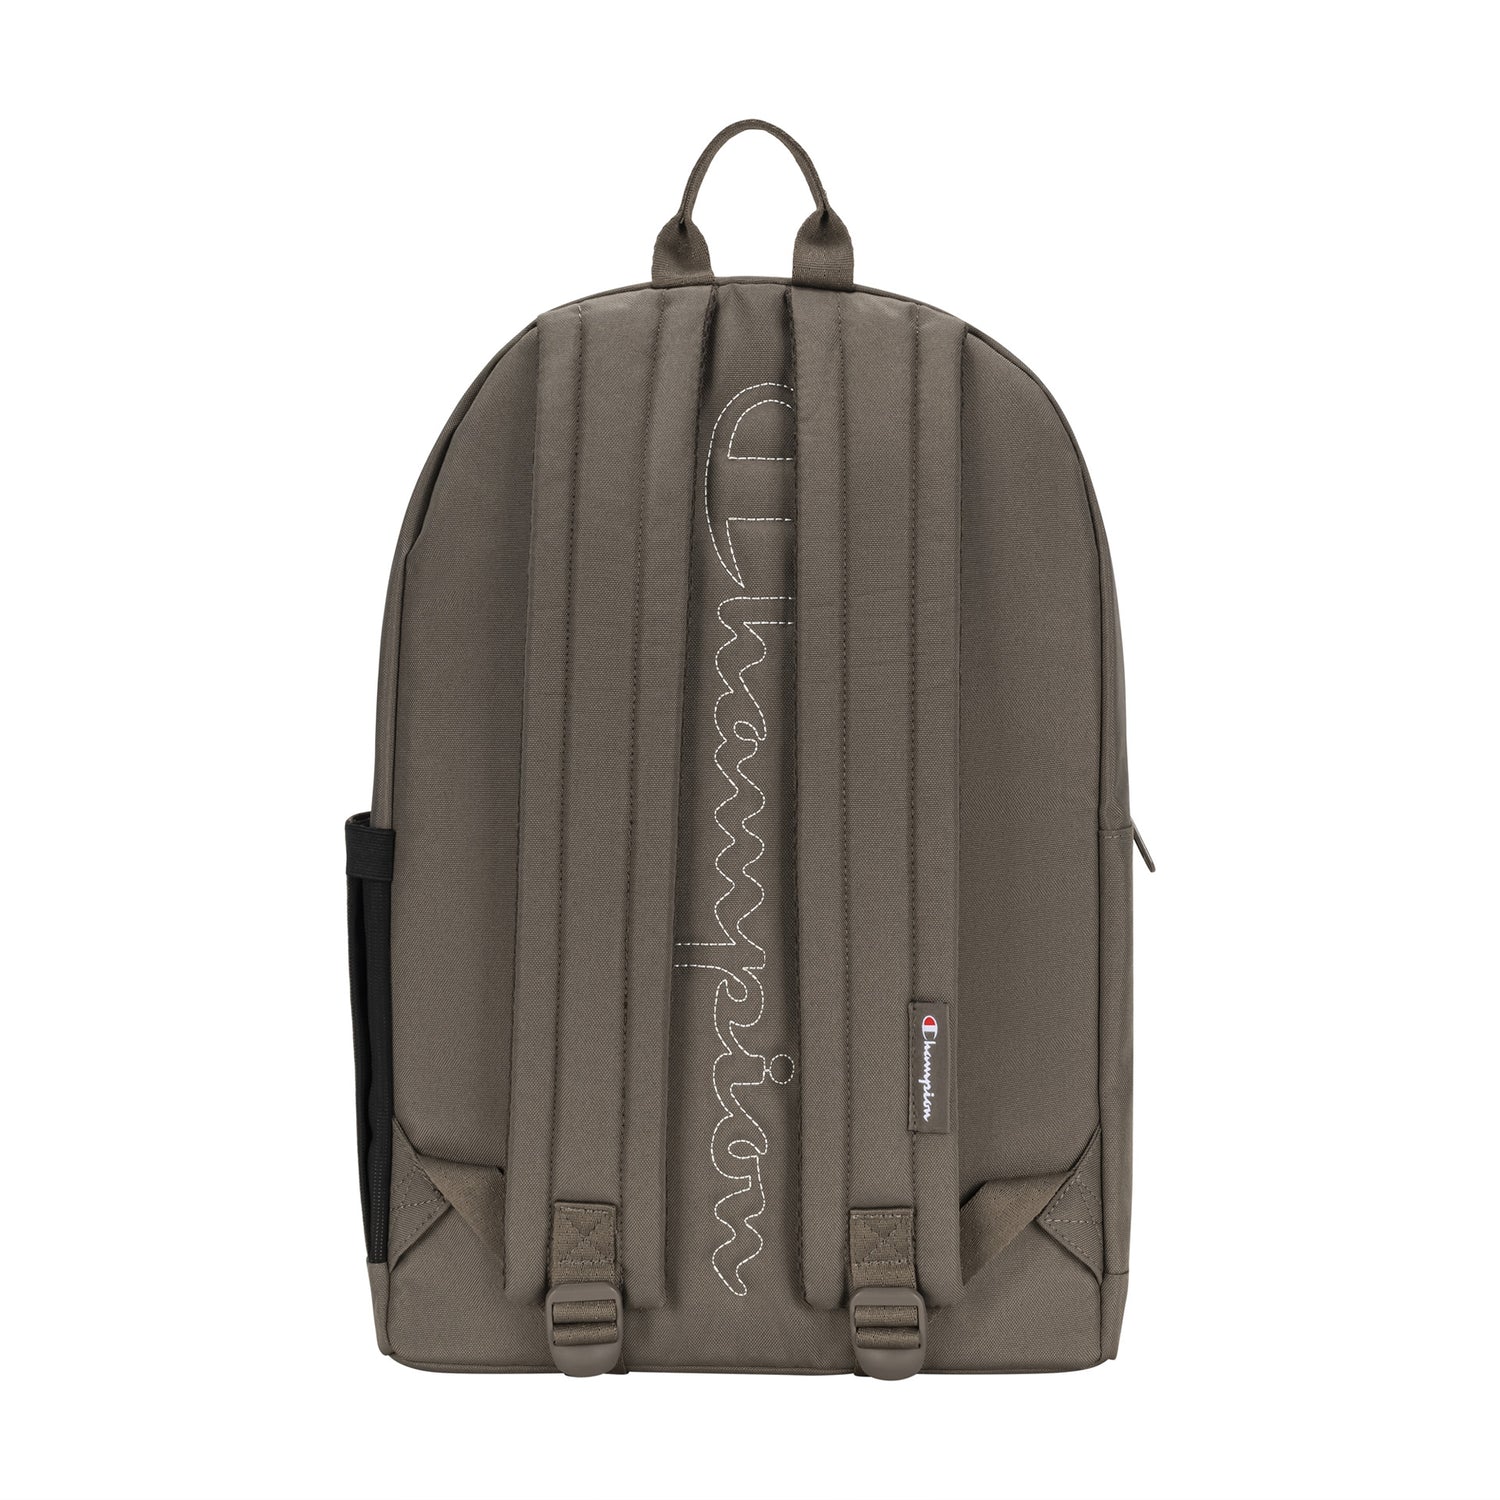 Lifeline 2.0 Backpack - Bentley